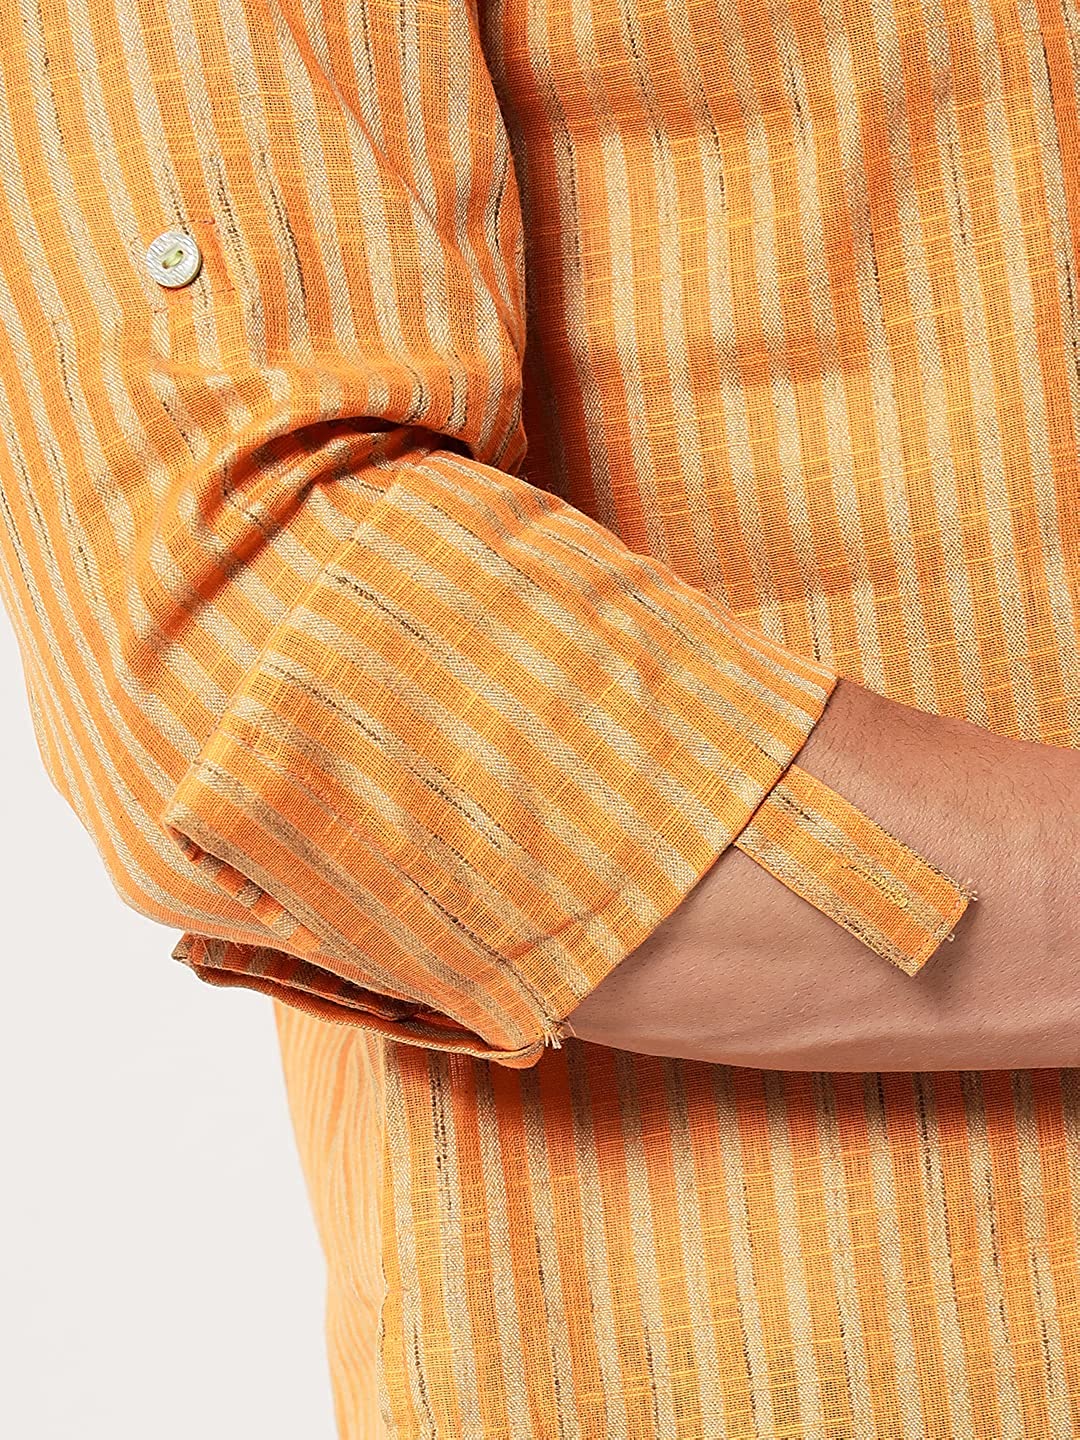 Vastraa Fusion Men's Gold Line Handloom Weaving Pure Cotton Short Kurta, Round Collar, Full Sleeves, Wooden Button Kurta, Ethnic Wear